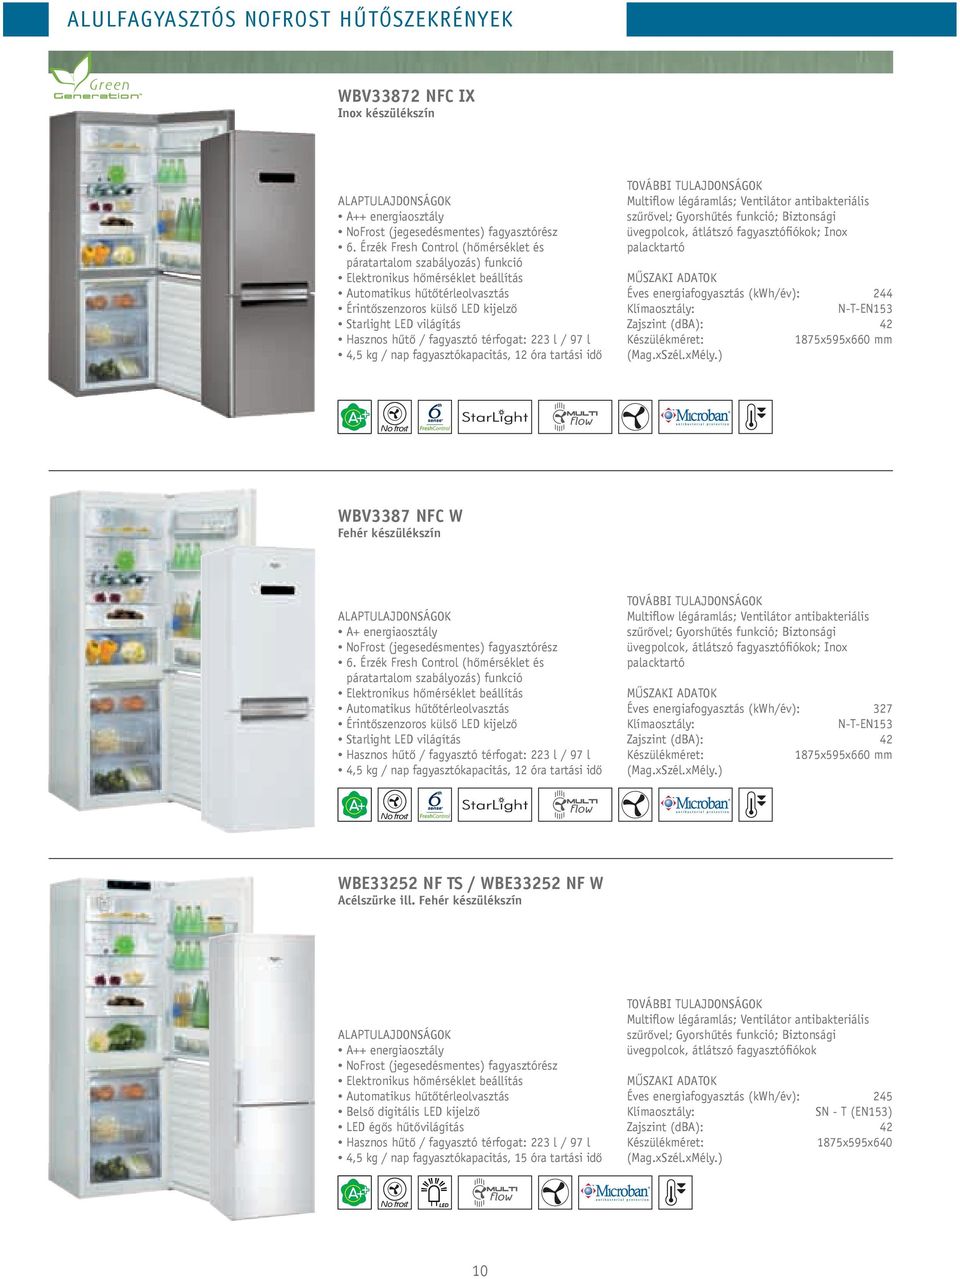 Hasznos hűtő / fagyasztó térfogat: 223 l / 97 l 4,5 kg / nap fagyasztókapacitás, 12 óra tartási idő Multiflow légáramlás; Ventilátor antibakteriális szűrővel; Gyorshűtés funkció; Biztonsági